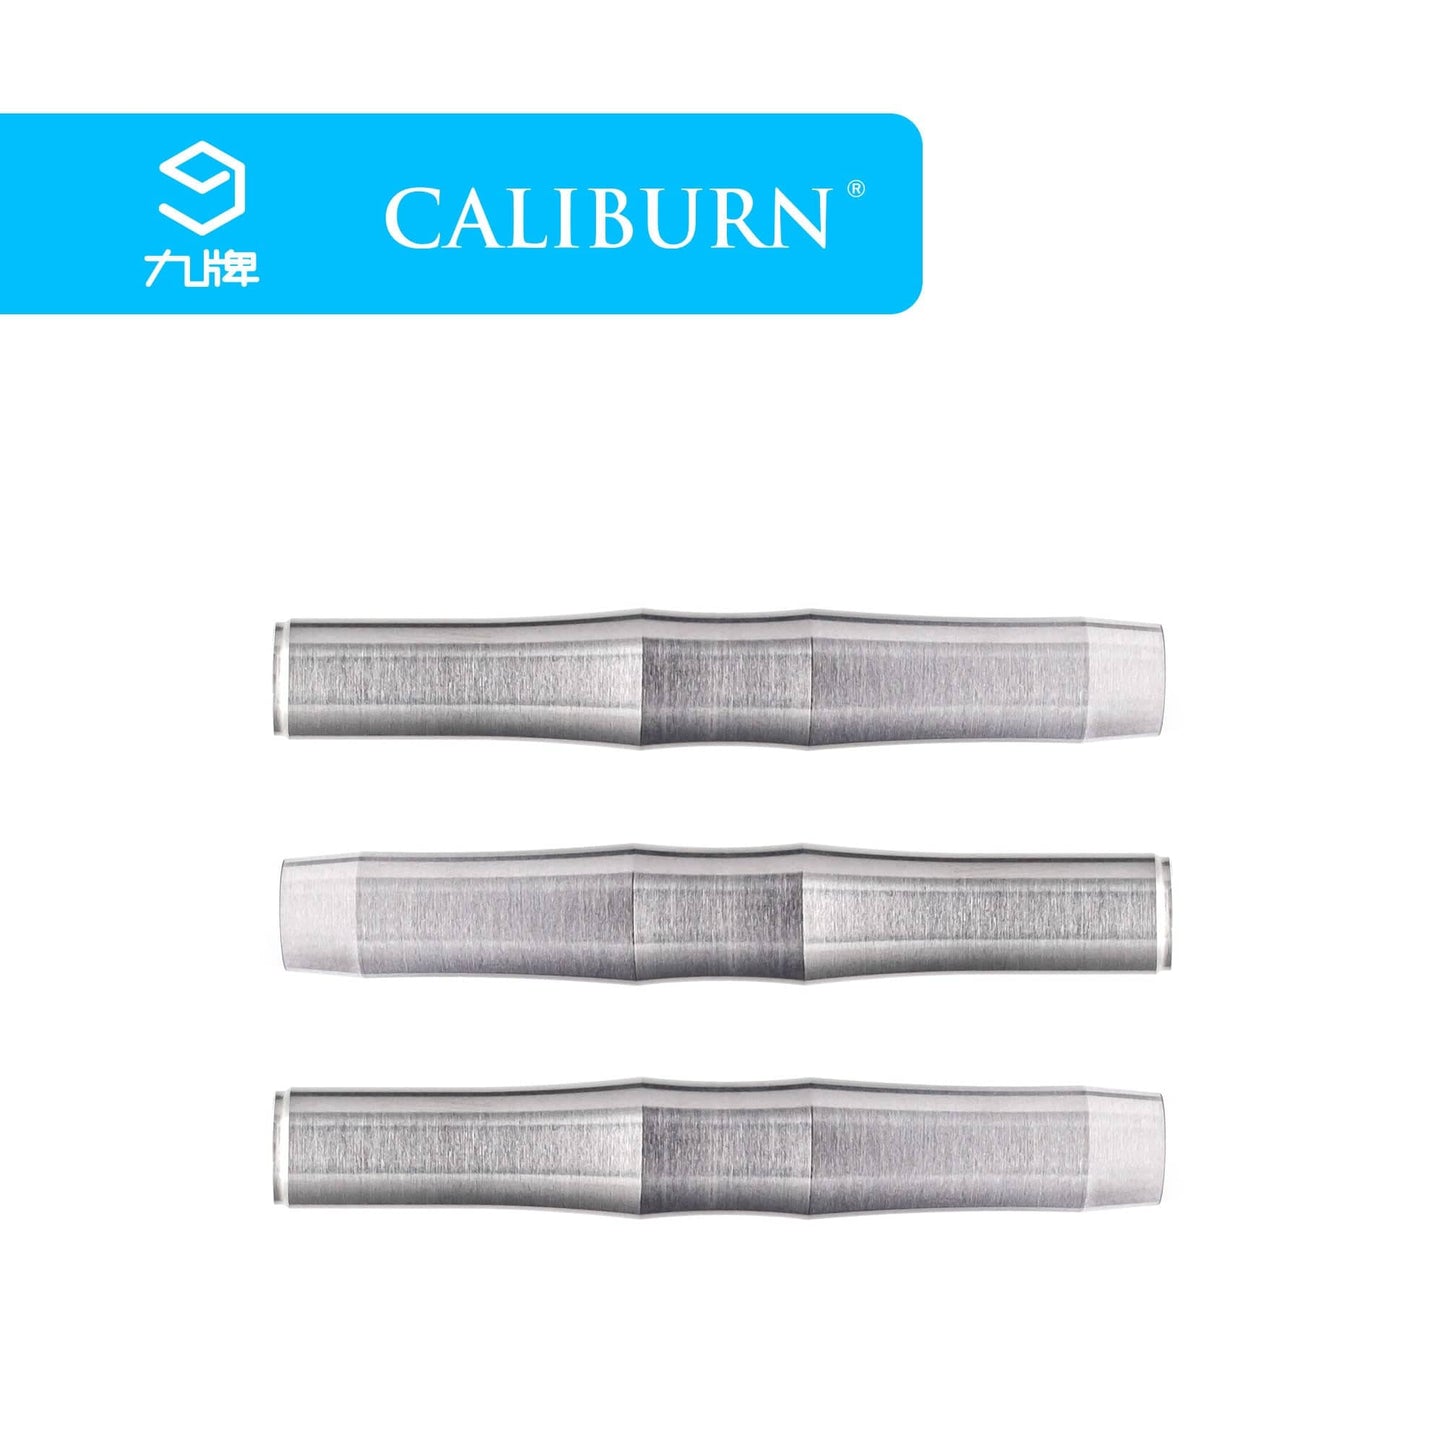 Caliburn Eureka Darts - Soft Tip - 95% - M4 - 虚怀 - Natural 20g